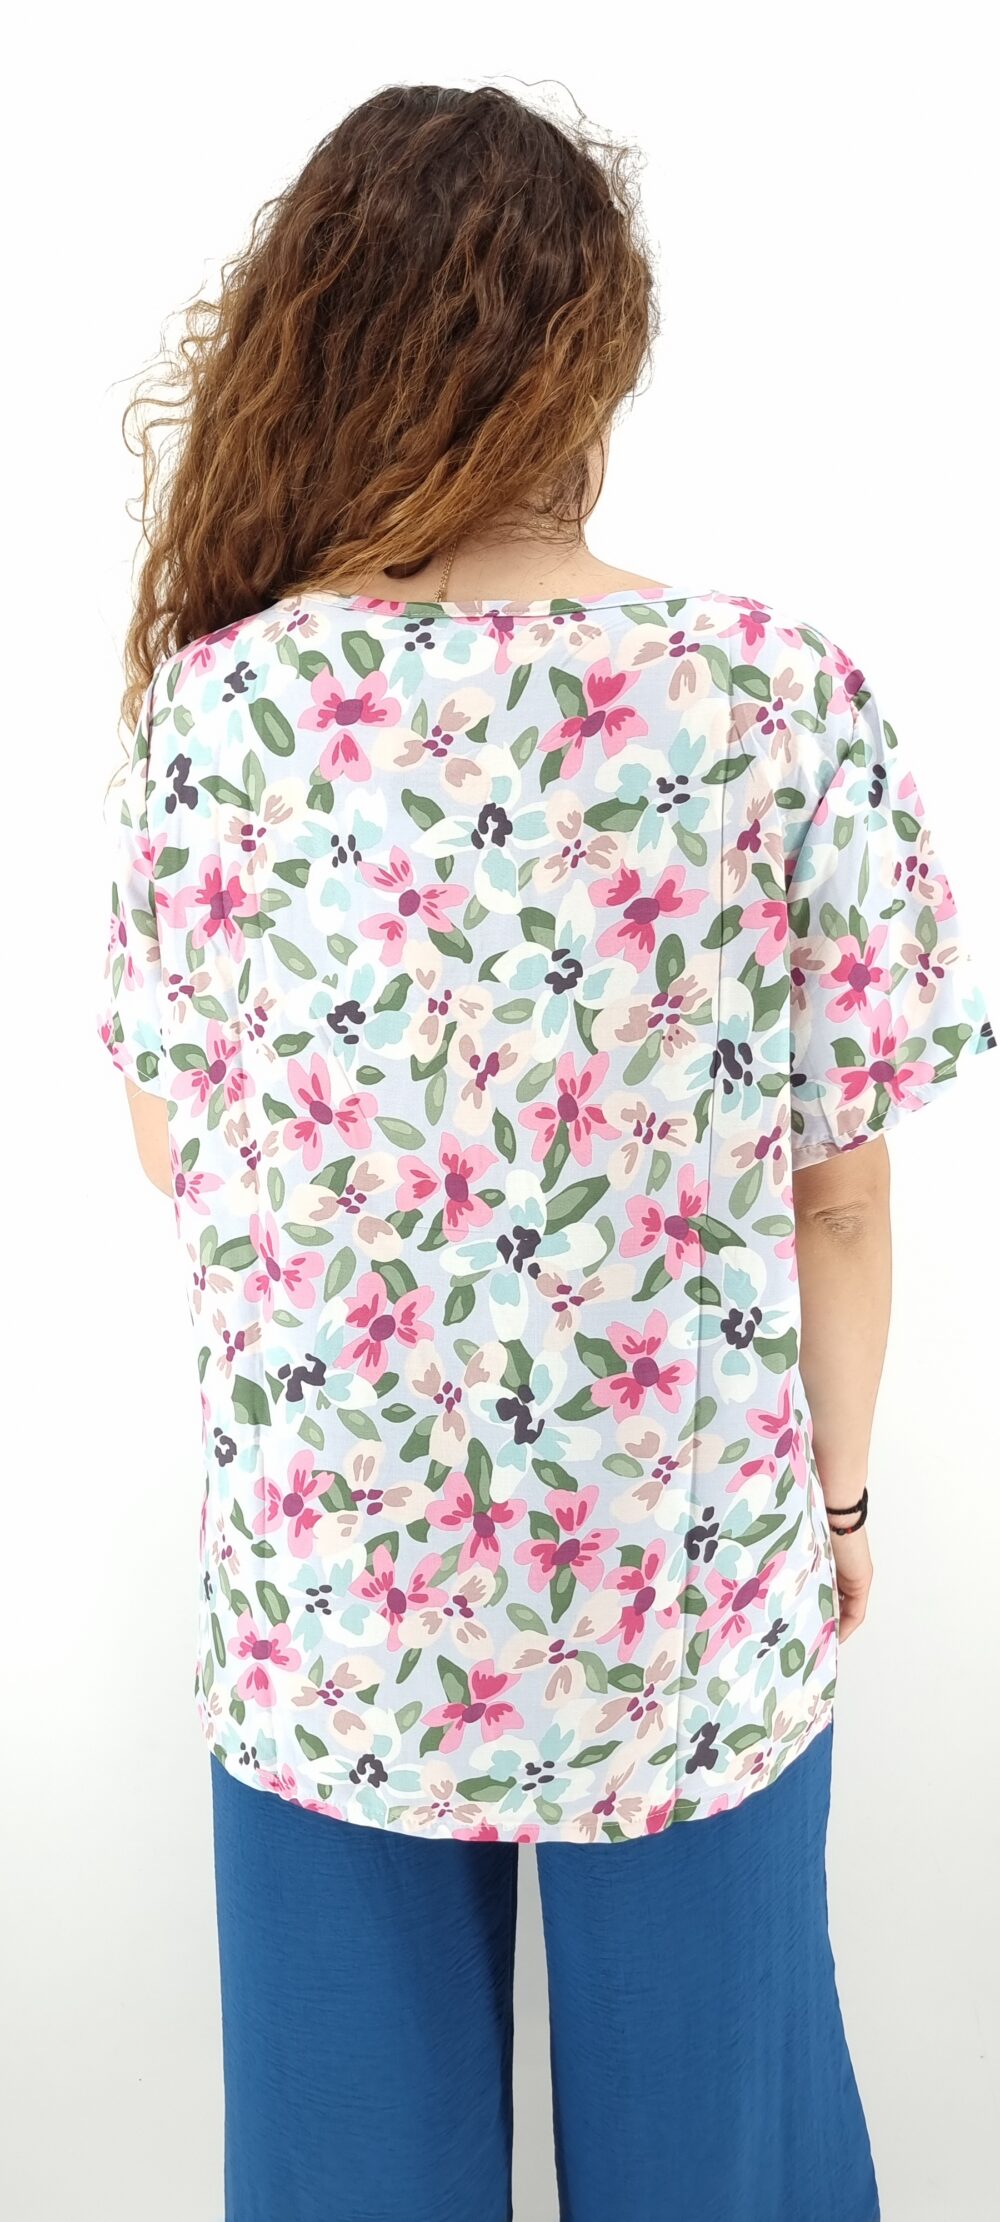 Μπλούζα με μεγάλο φλοράλ μοτίβο σε φαρδιά γραμμή άσπρο ροζ